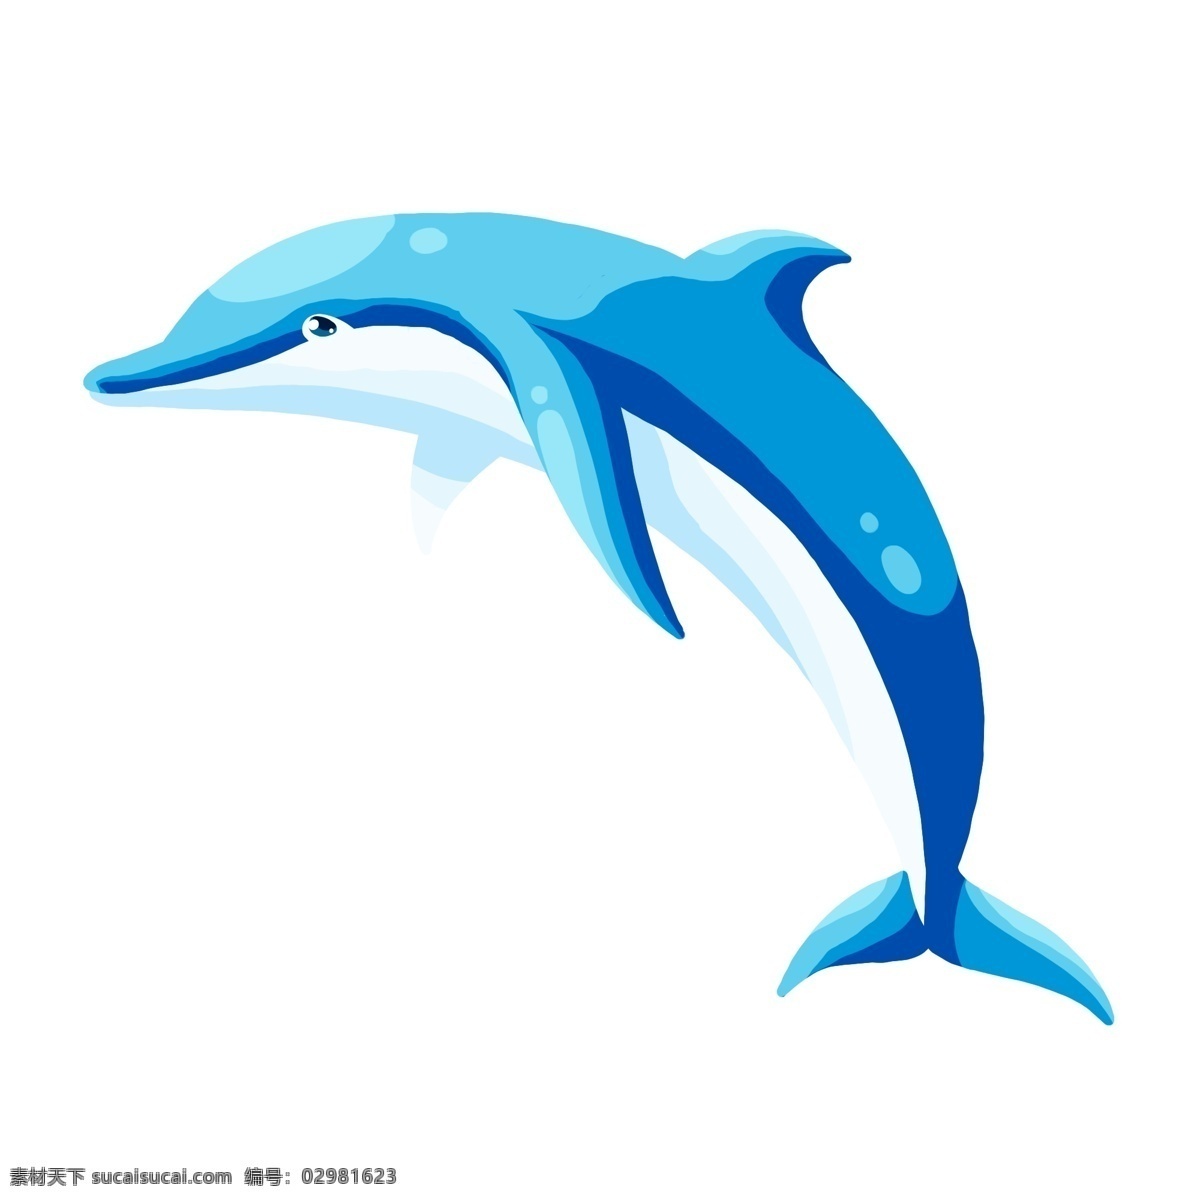 可爱蓝色海豚 海底 水生 动物